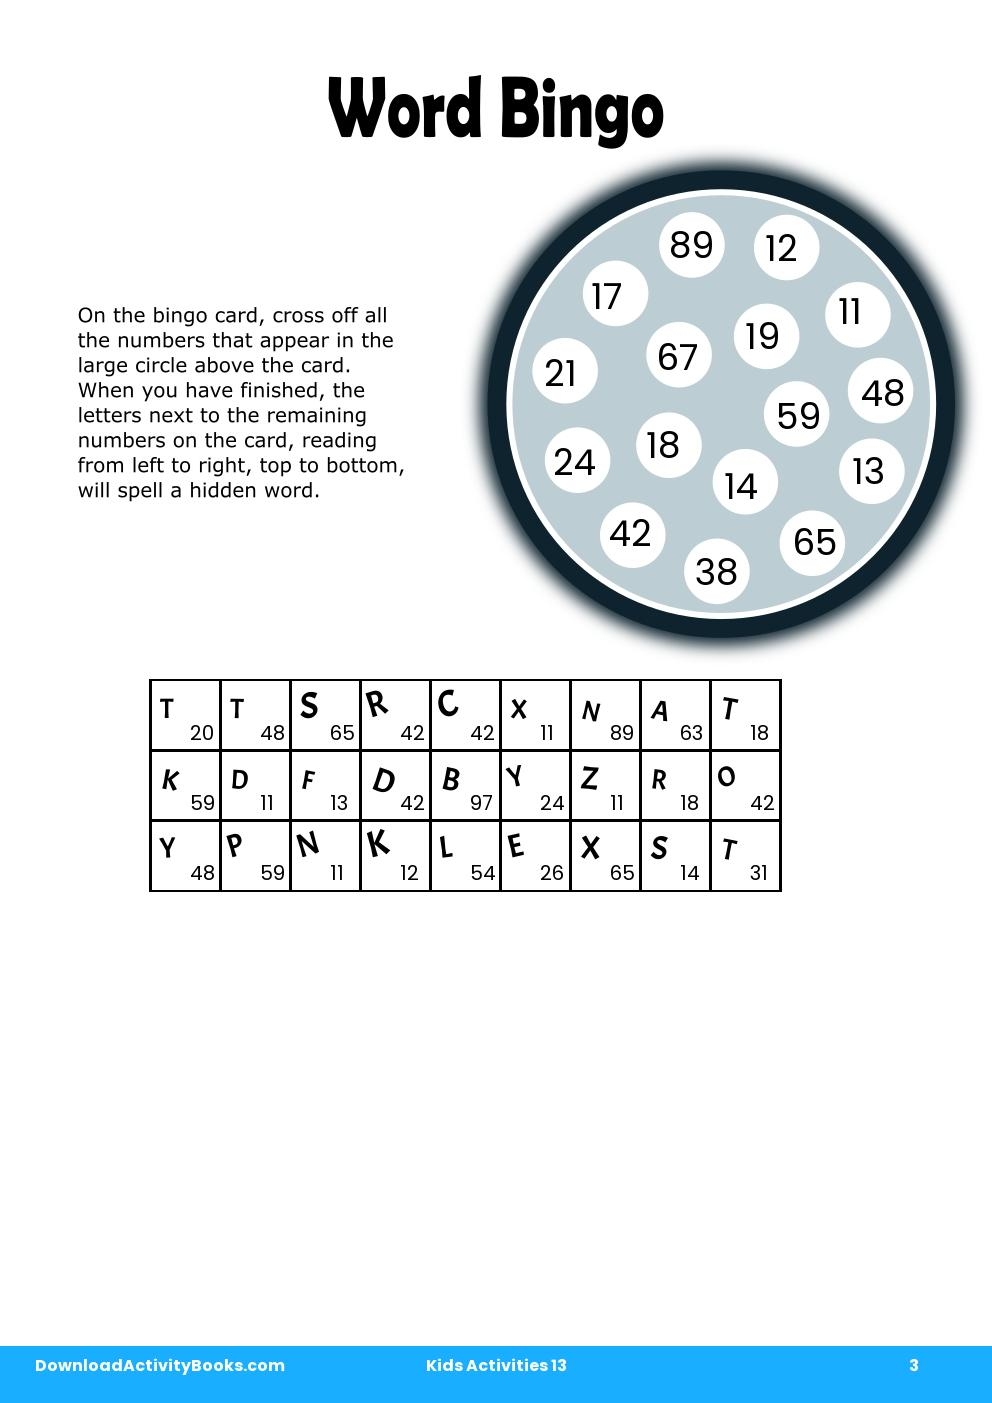 Word Bingo in Kids Activities 13